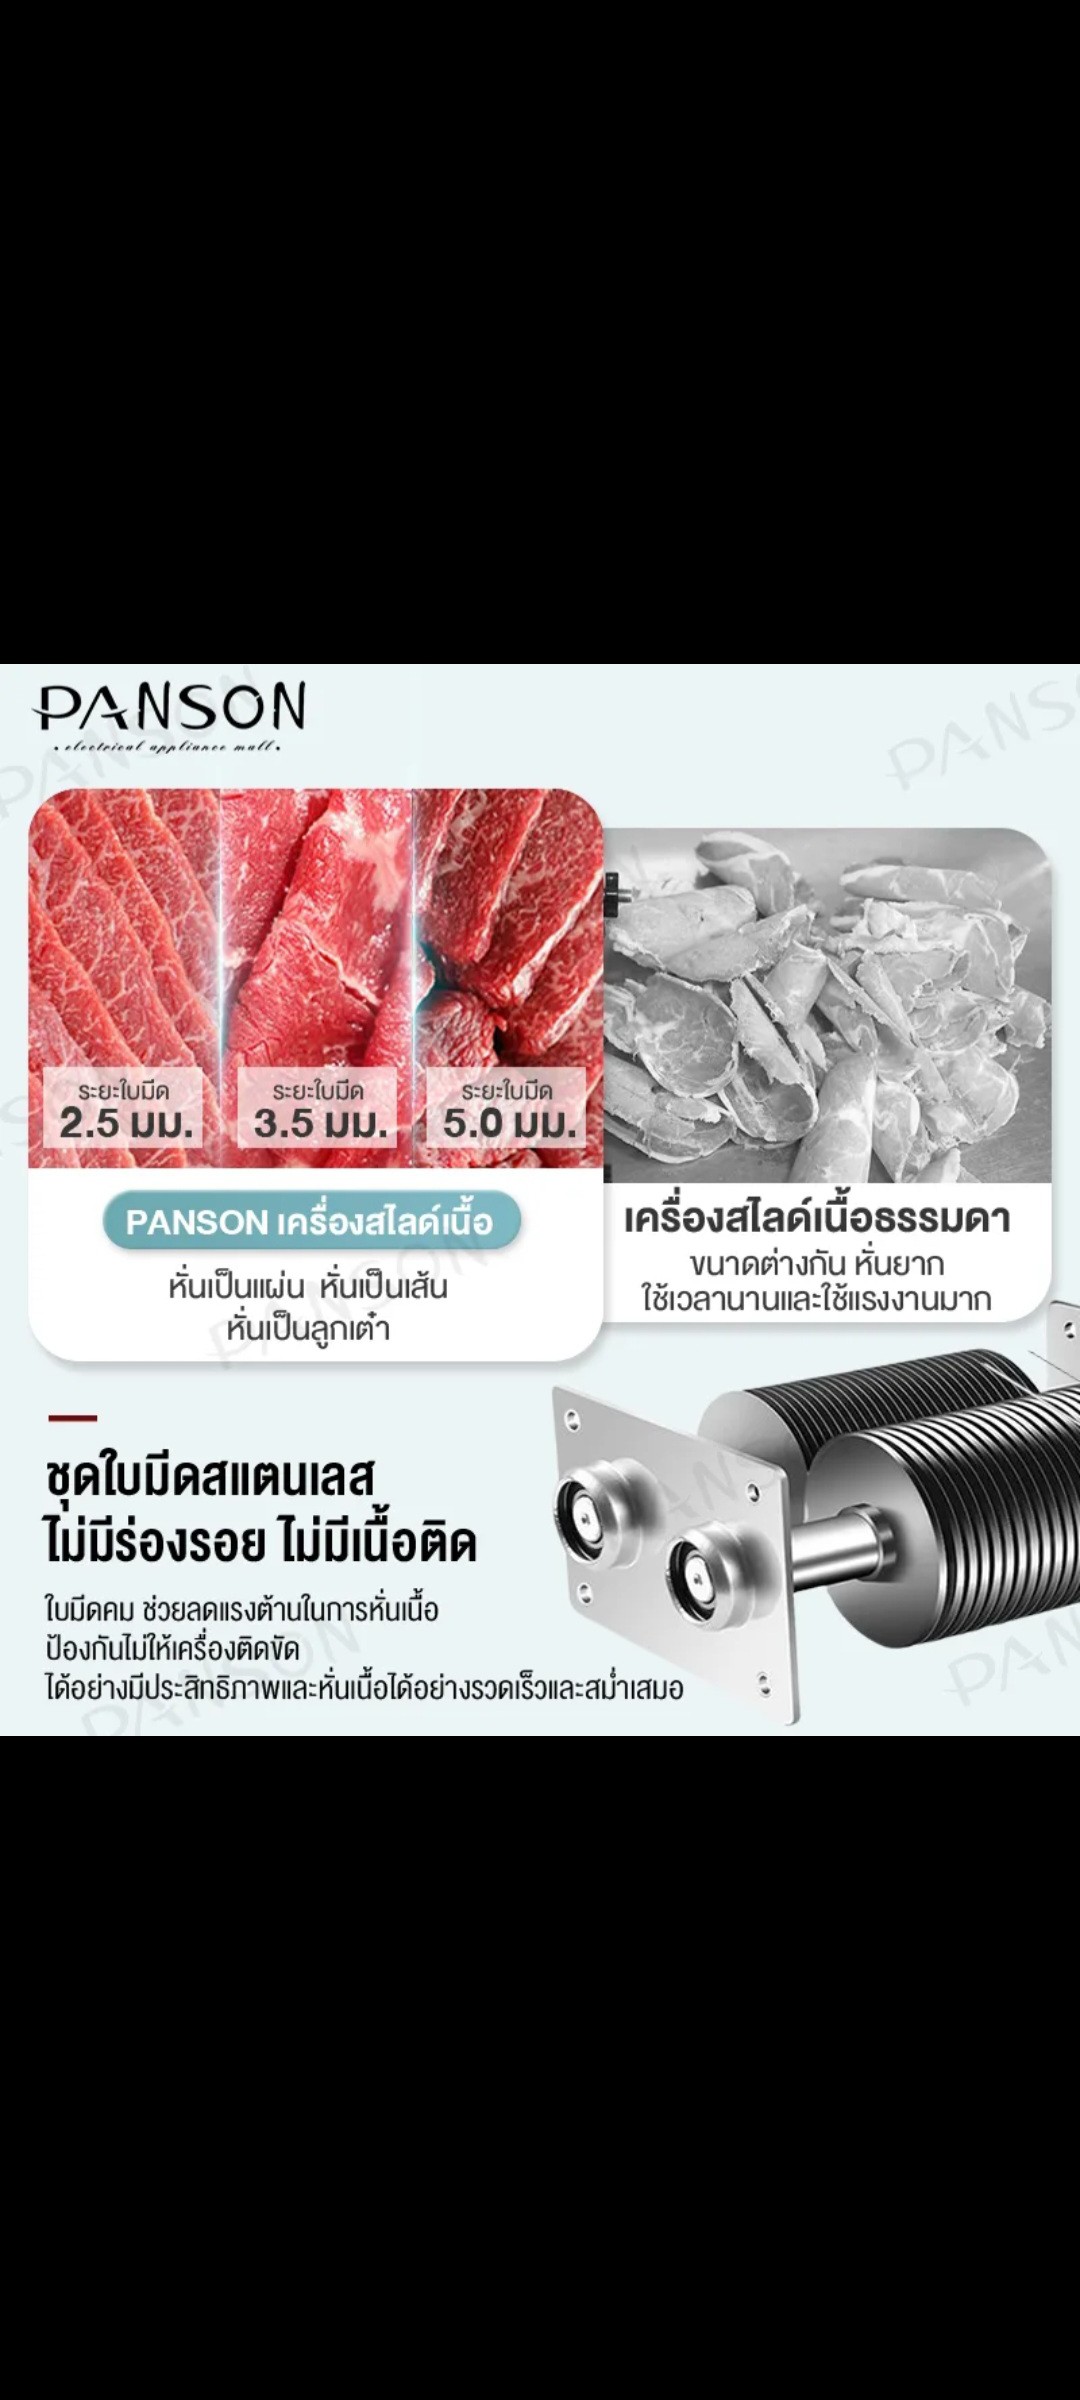 ເຄື່ອງສະໄລ້ຊີ້ນ ຍີ່ຫໍ້: PANSON ລຸ້ນ: 2.5mm. ກຳລັງໄຟ 850W, ເໝາະກັບຮ້ານຊີ້ນດາດ-ຈຸ່ມ ເຮັດໃຫ້ການສະໄລ້ຊີ້ນສະດວກສະບາຍ, ປະຫຍັດເວລາປະຫຍັດແຮງງານ.